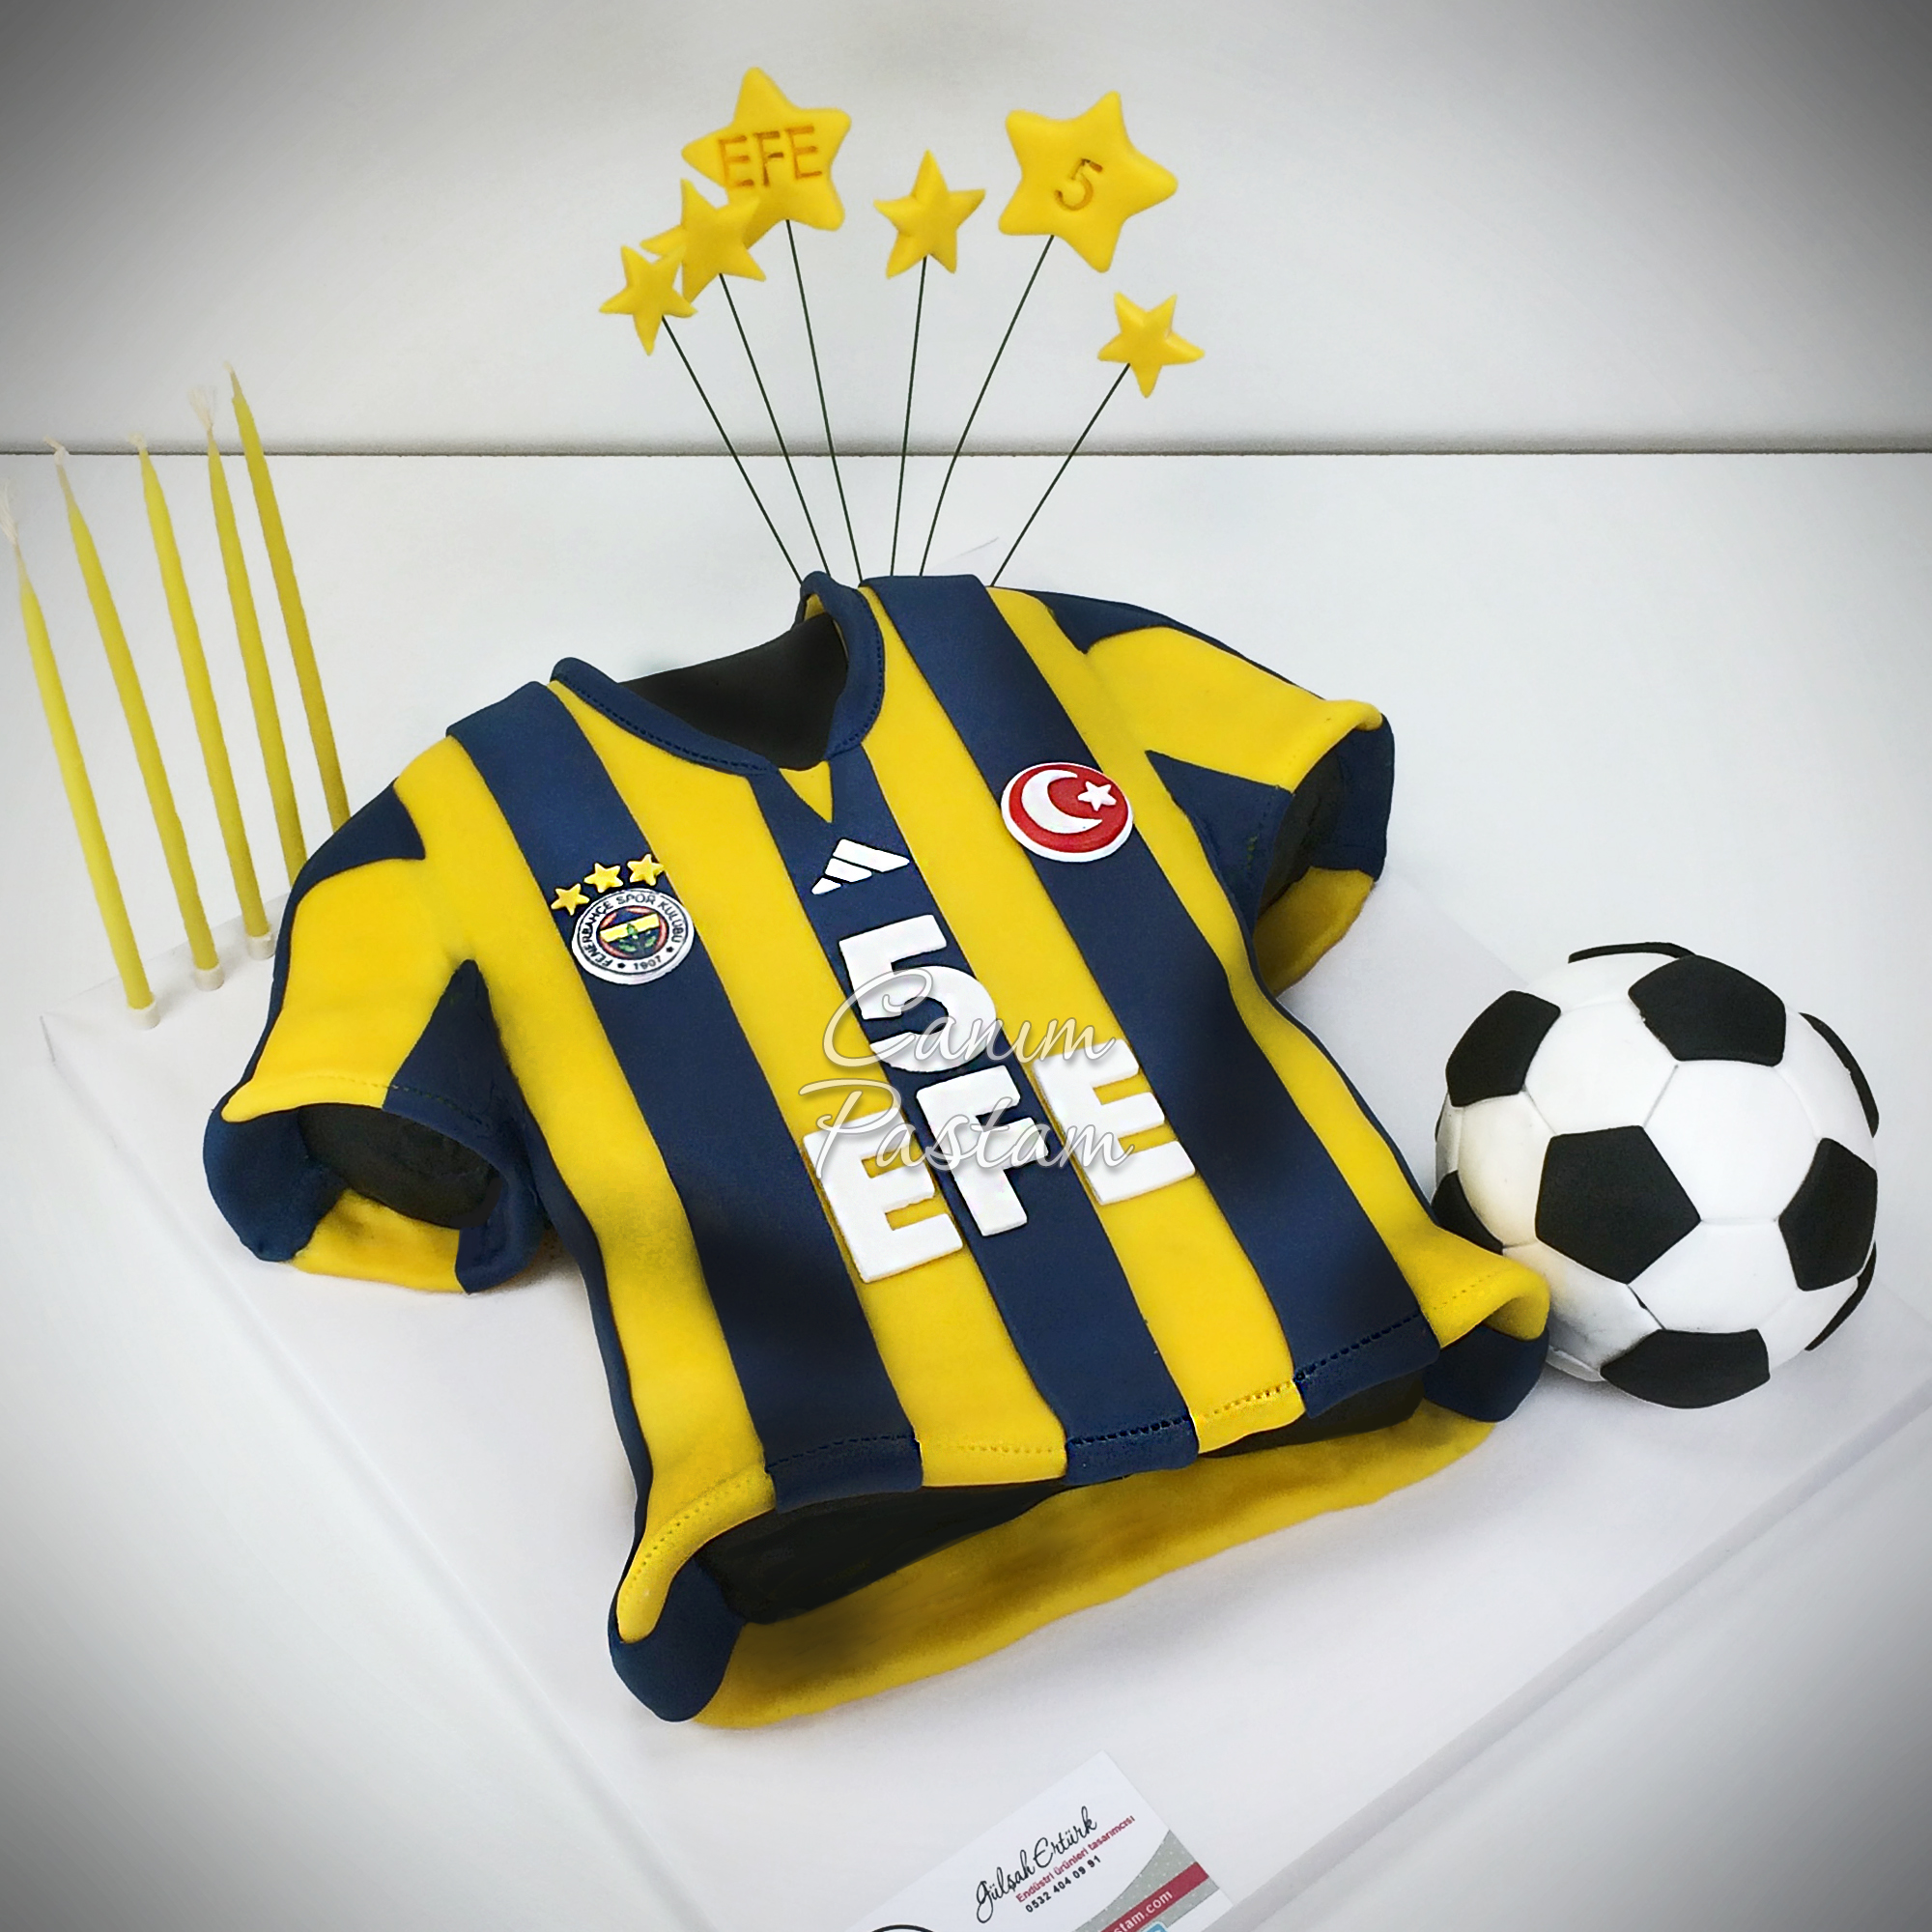 Football Cake FB Pastası Fenerbahçe Forma Pasta